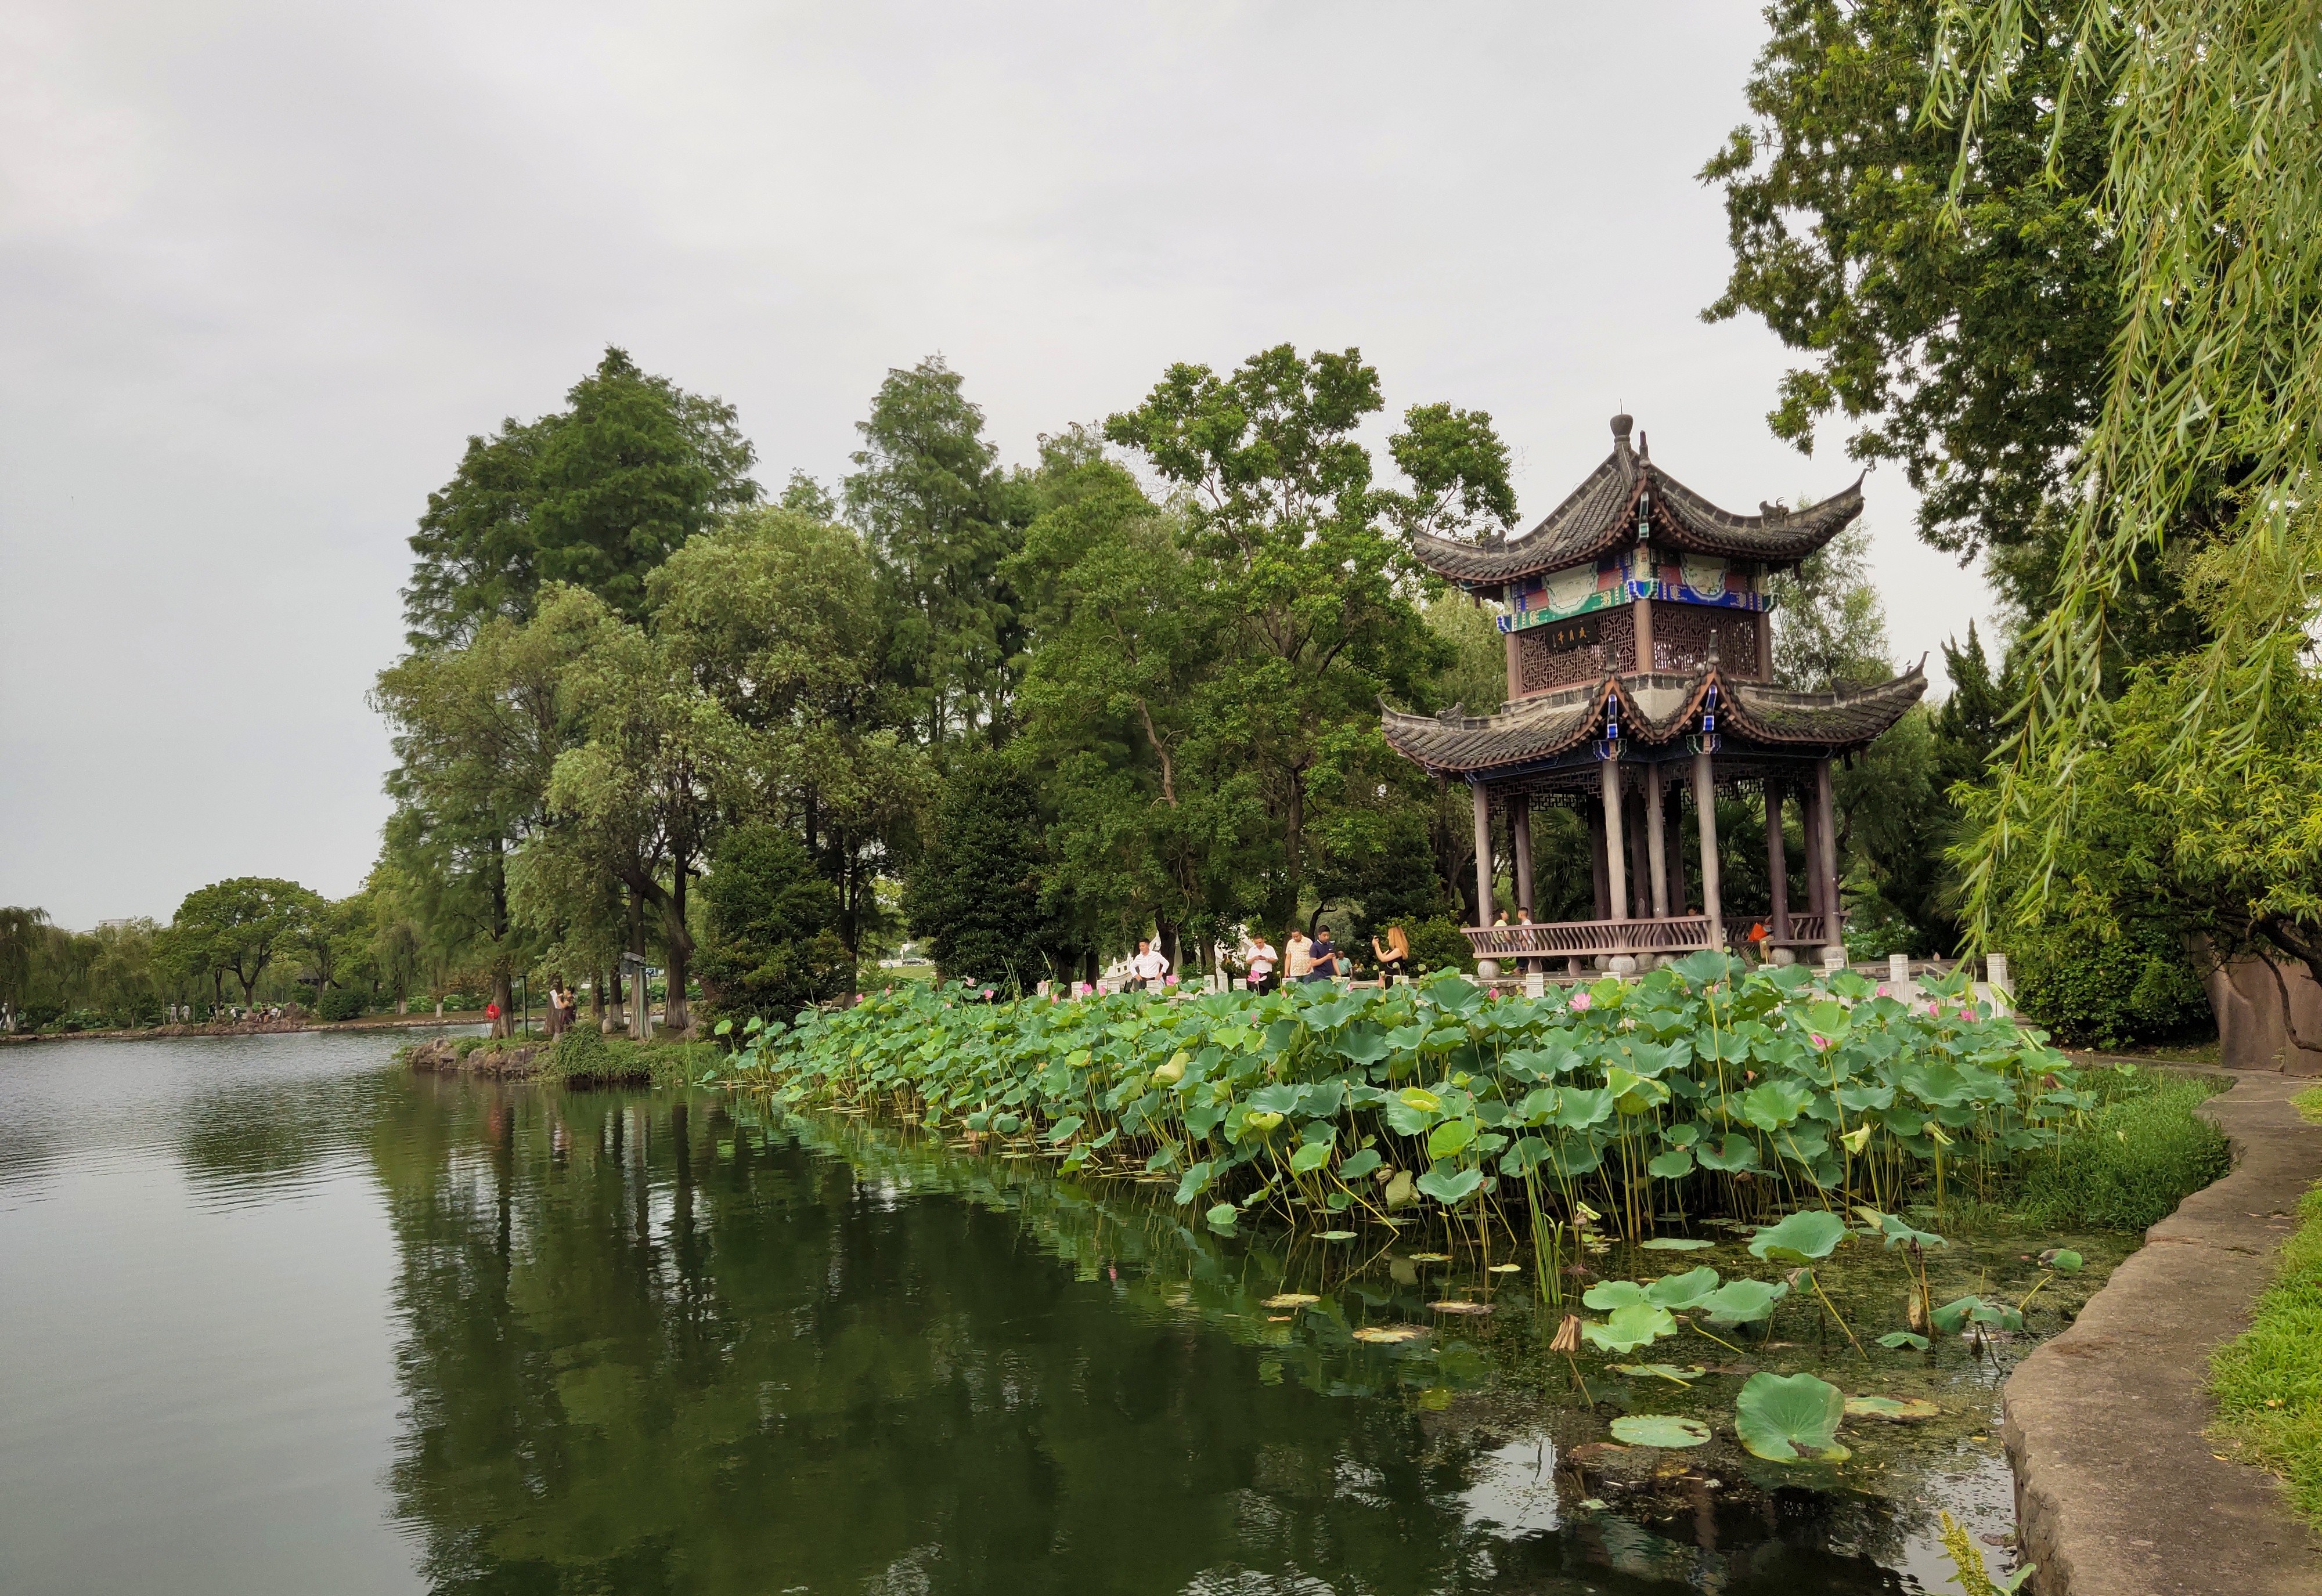 安庆菱湖公园是安徽省建成最早的园林式公园以"菱湖夜月"